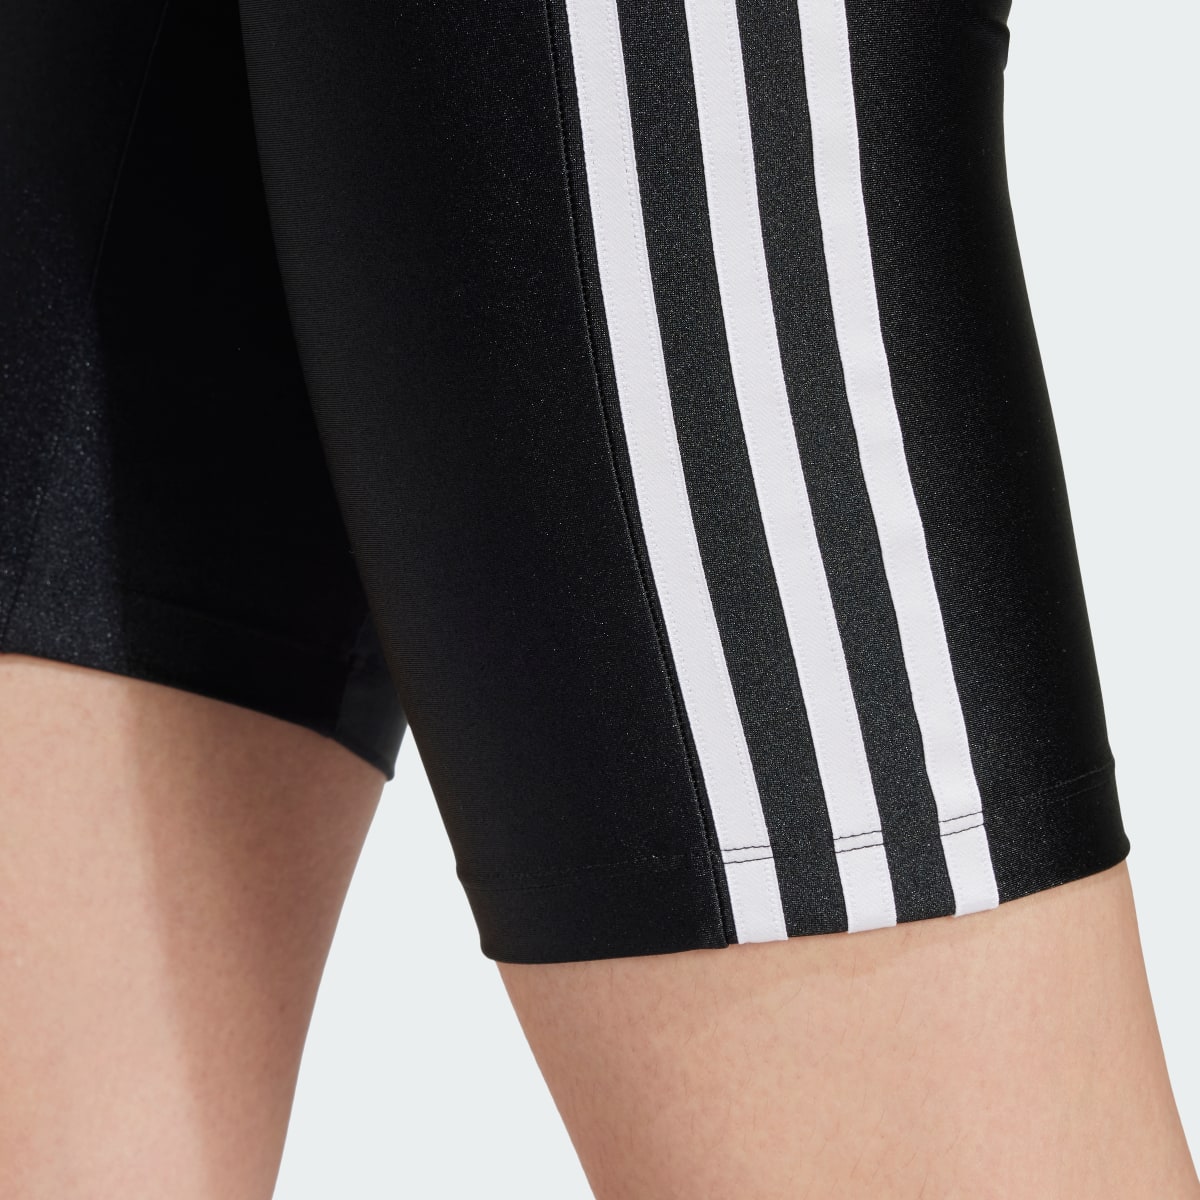 Adidas 3-Stripes 1/2 Leggings. 5